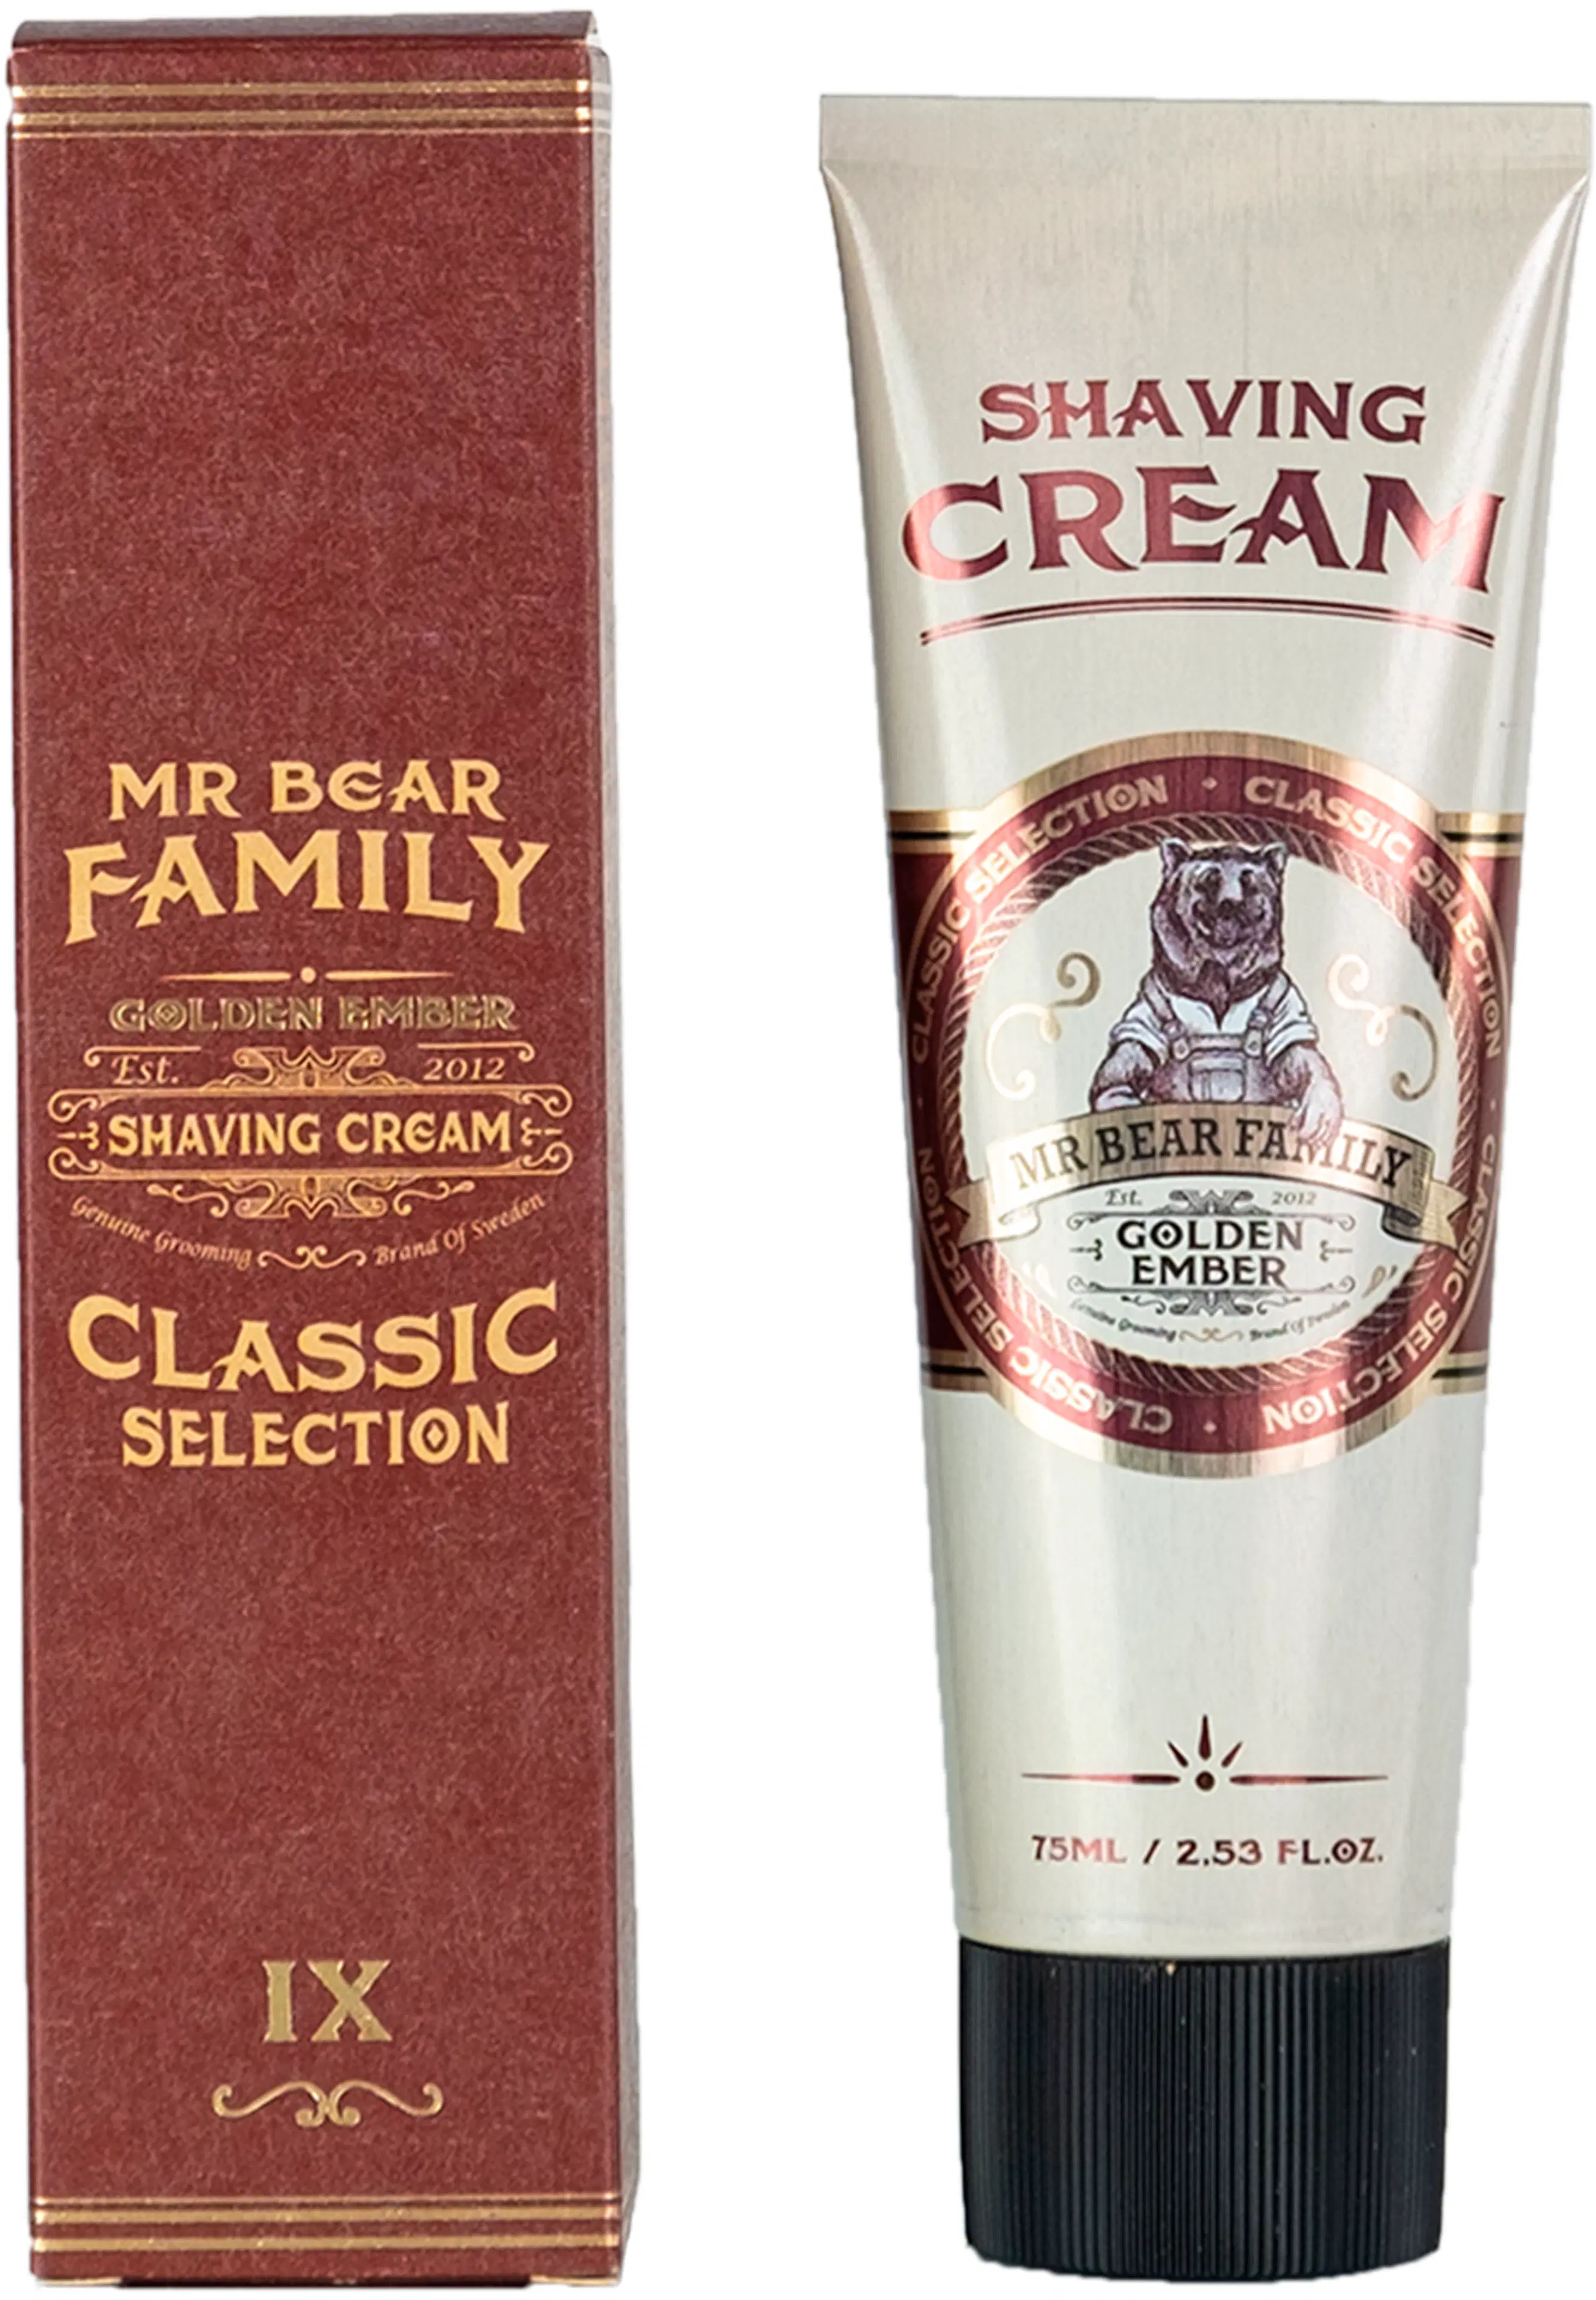 Mr Bear Family Golden Ember Shaving Cream parranajovoide 75 ml